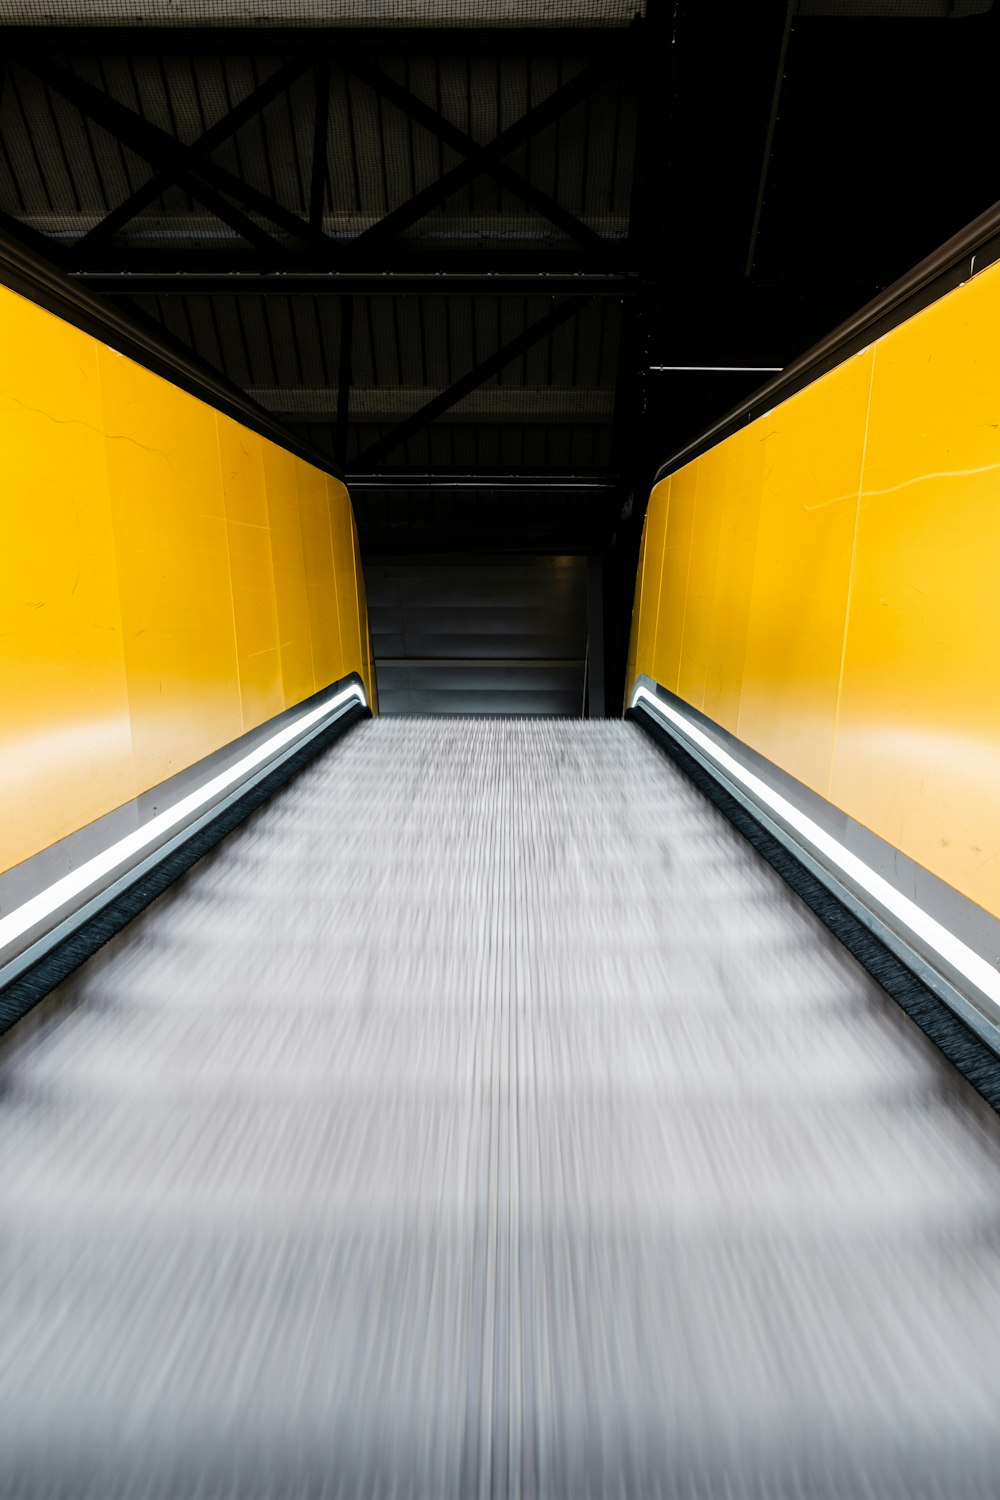 Escalera mecánica móvil con pasamanos amarillos